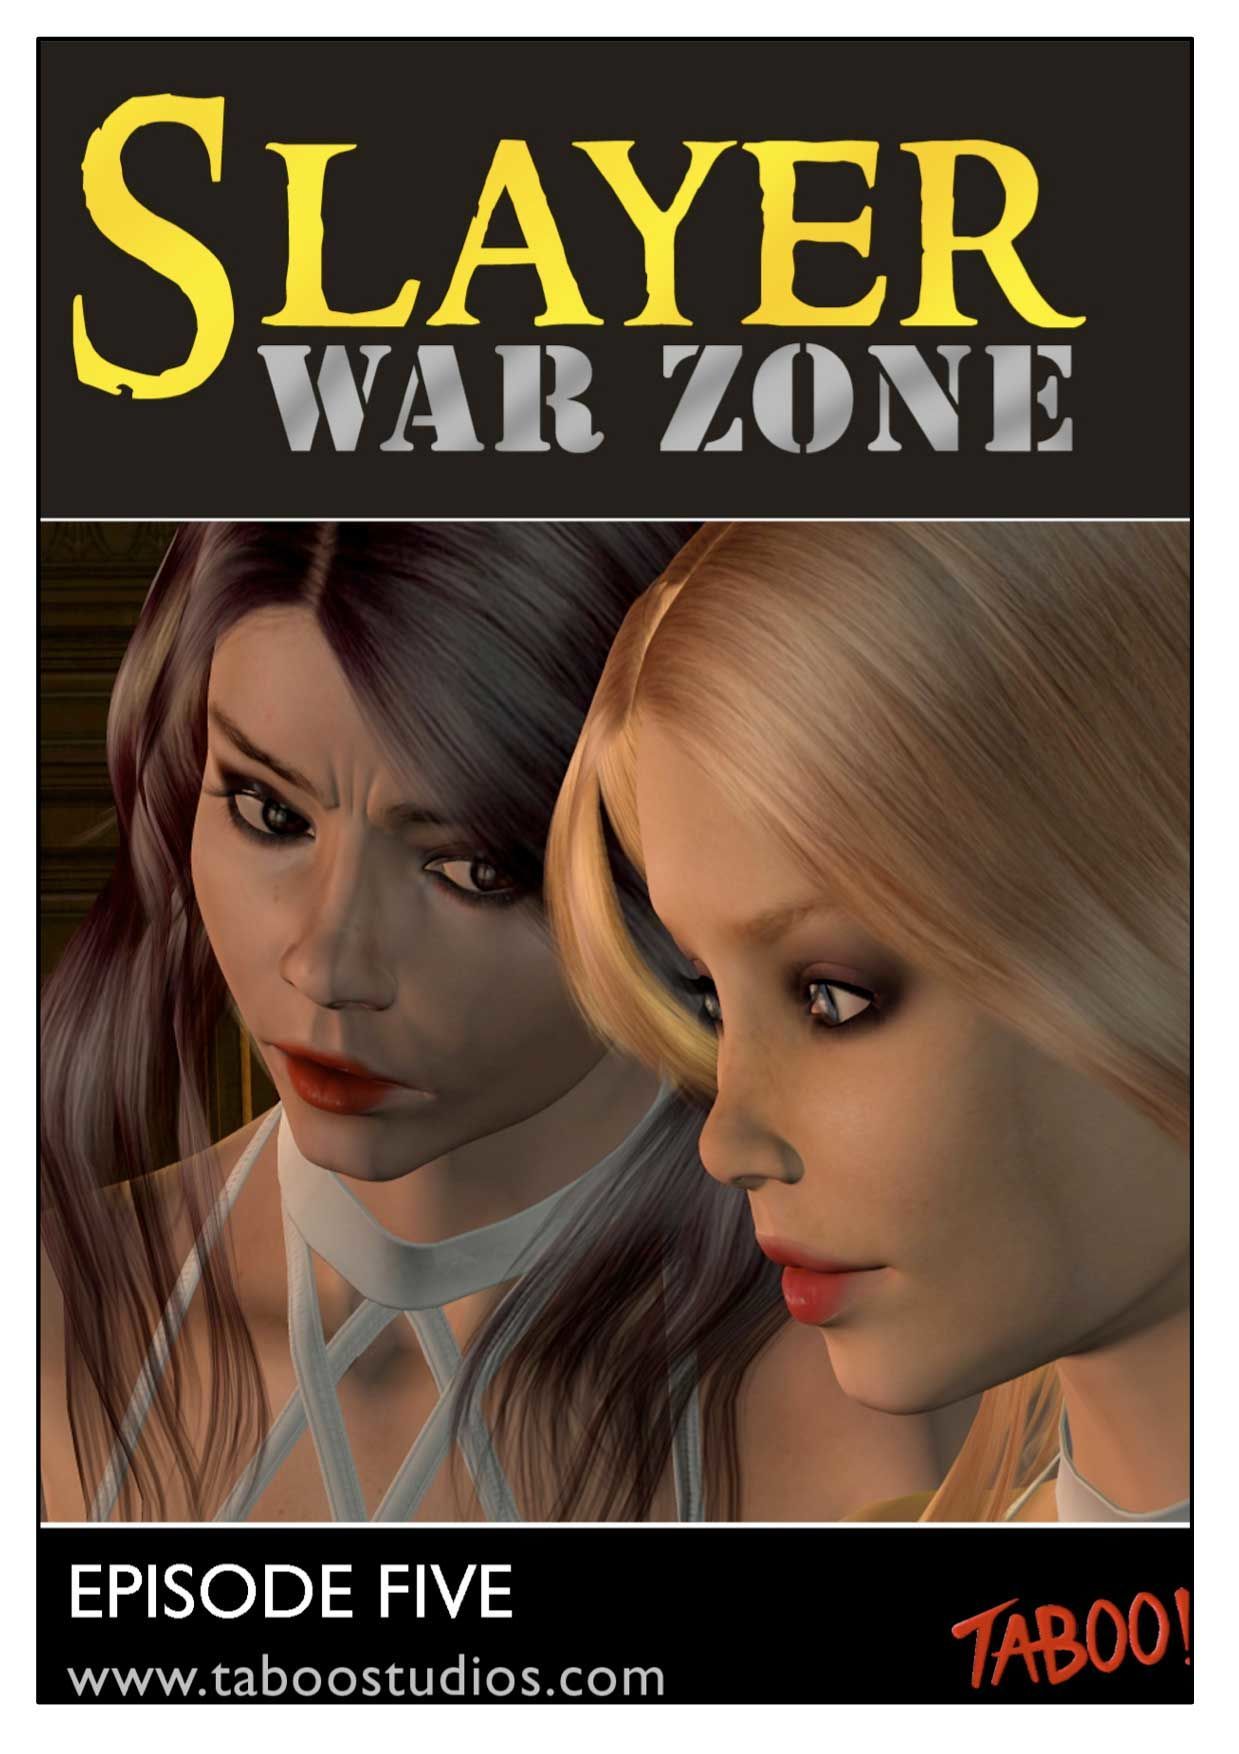 slayer Krieg zone Episode 5